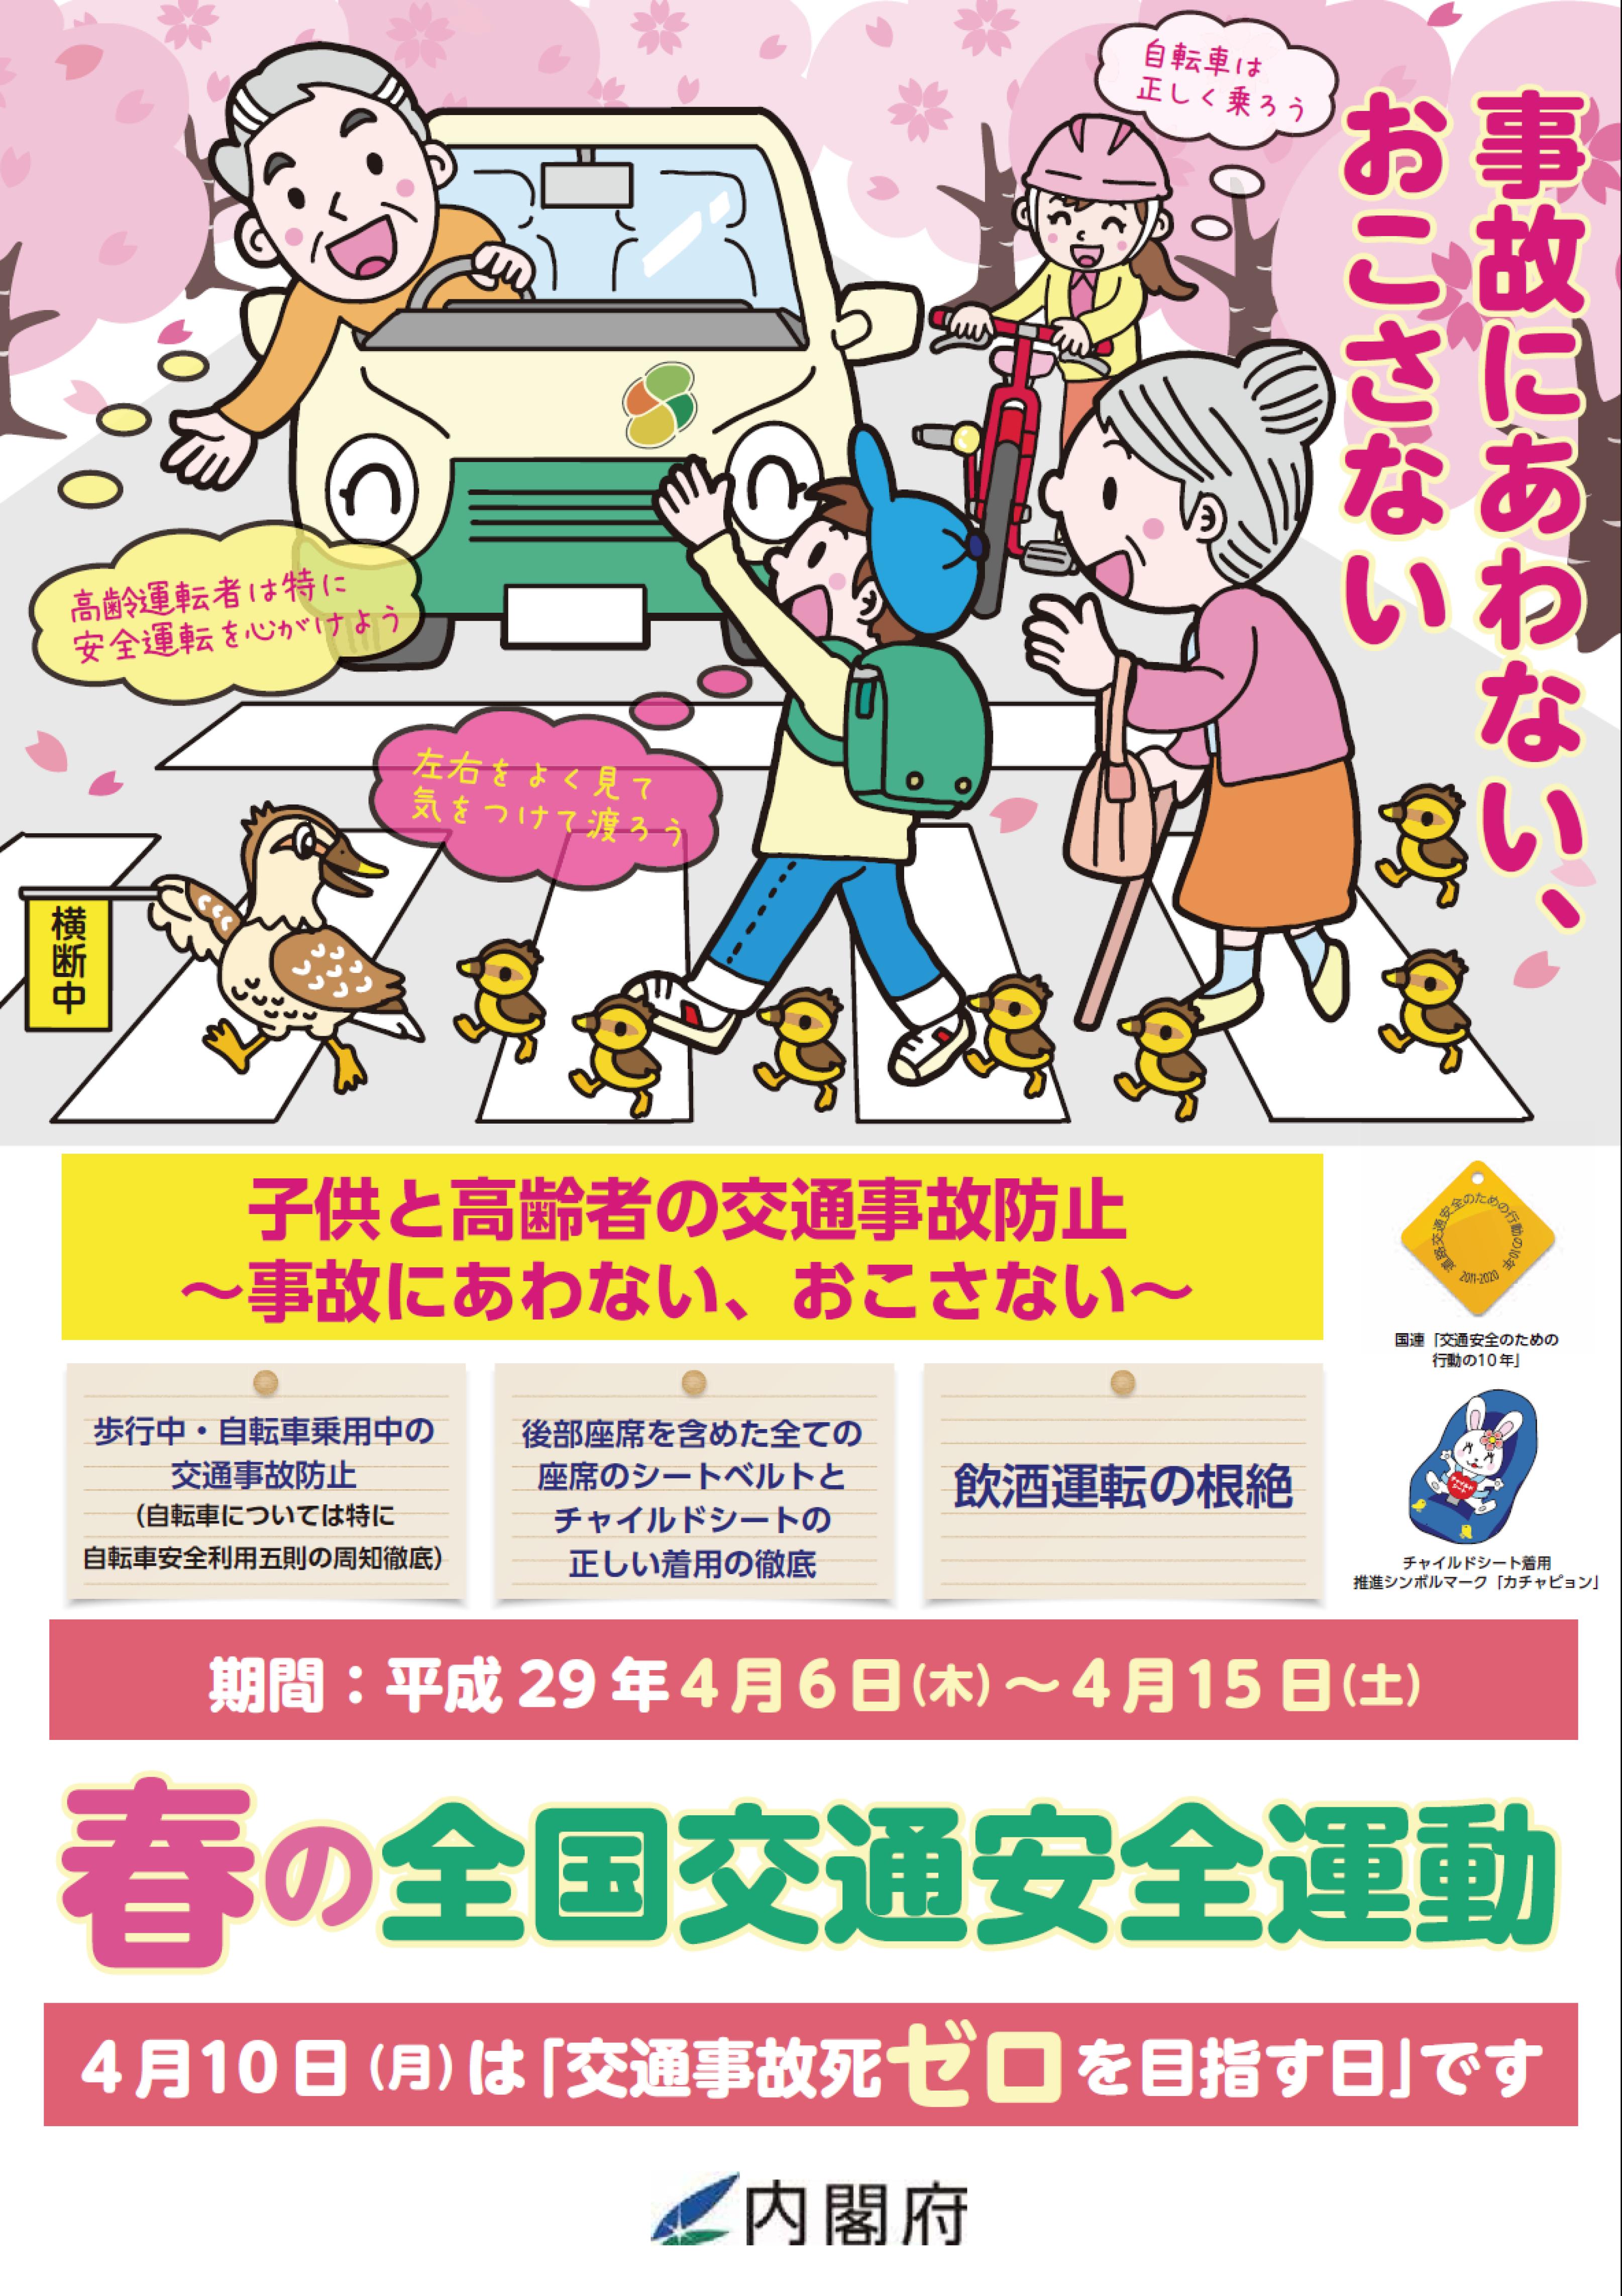 平成29年春の全国交通安全運動ポスター